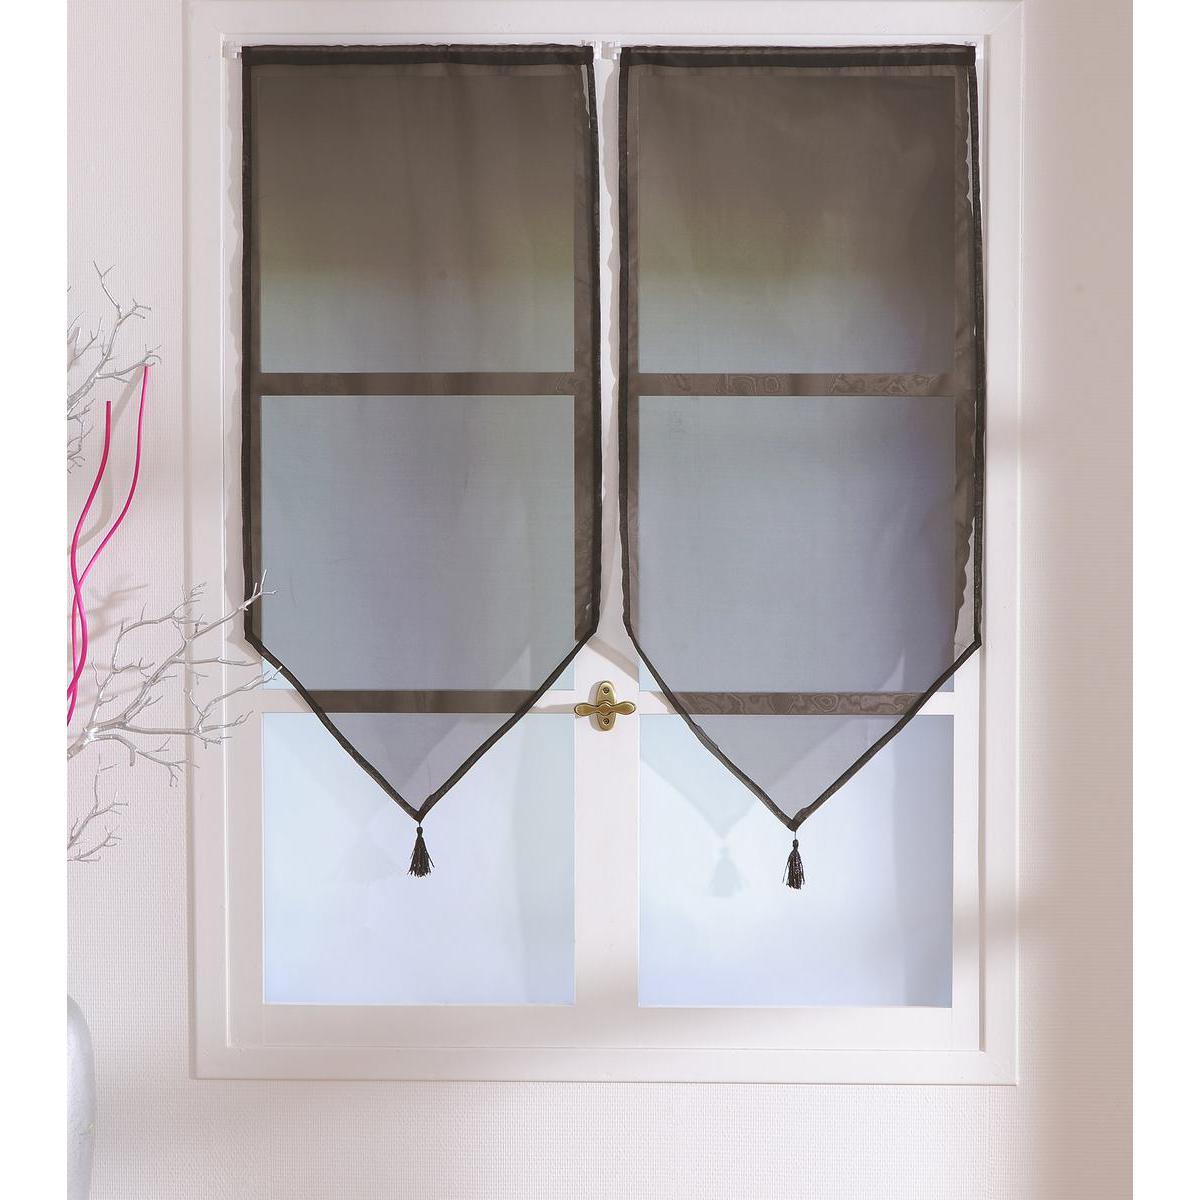 Paire de vitrages - 100% polyester - 60 x 120 cm - Marron